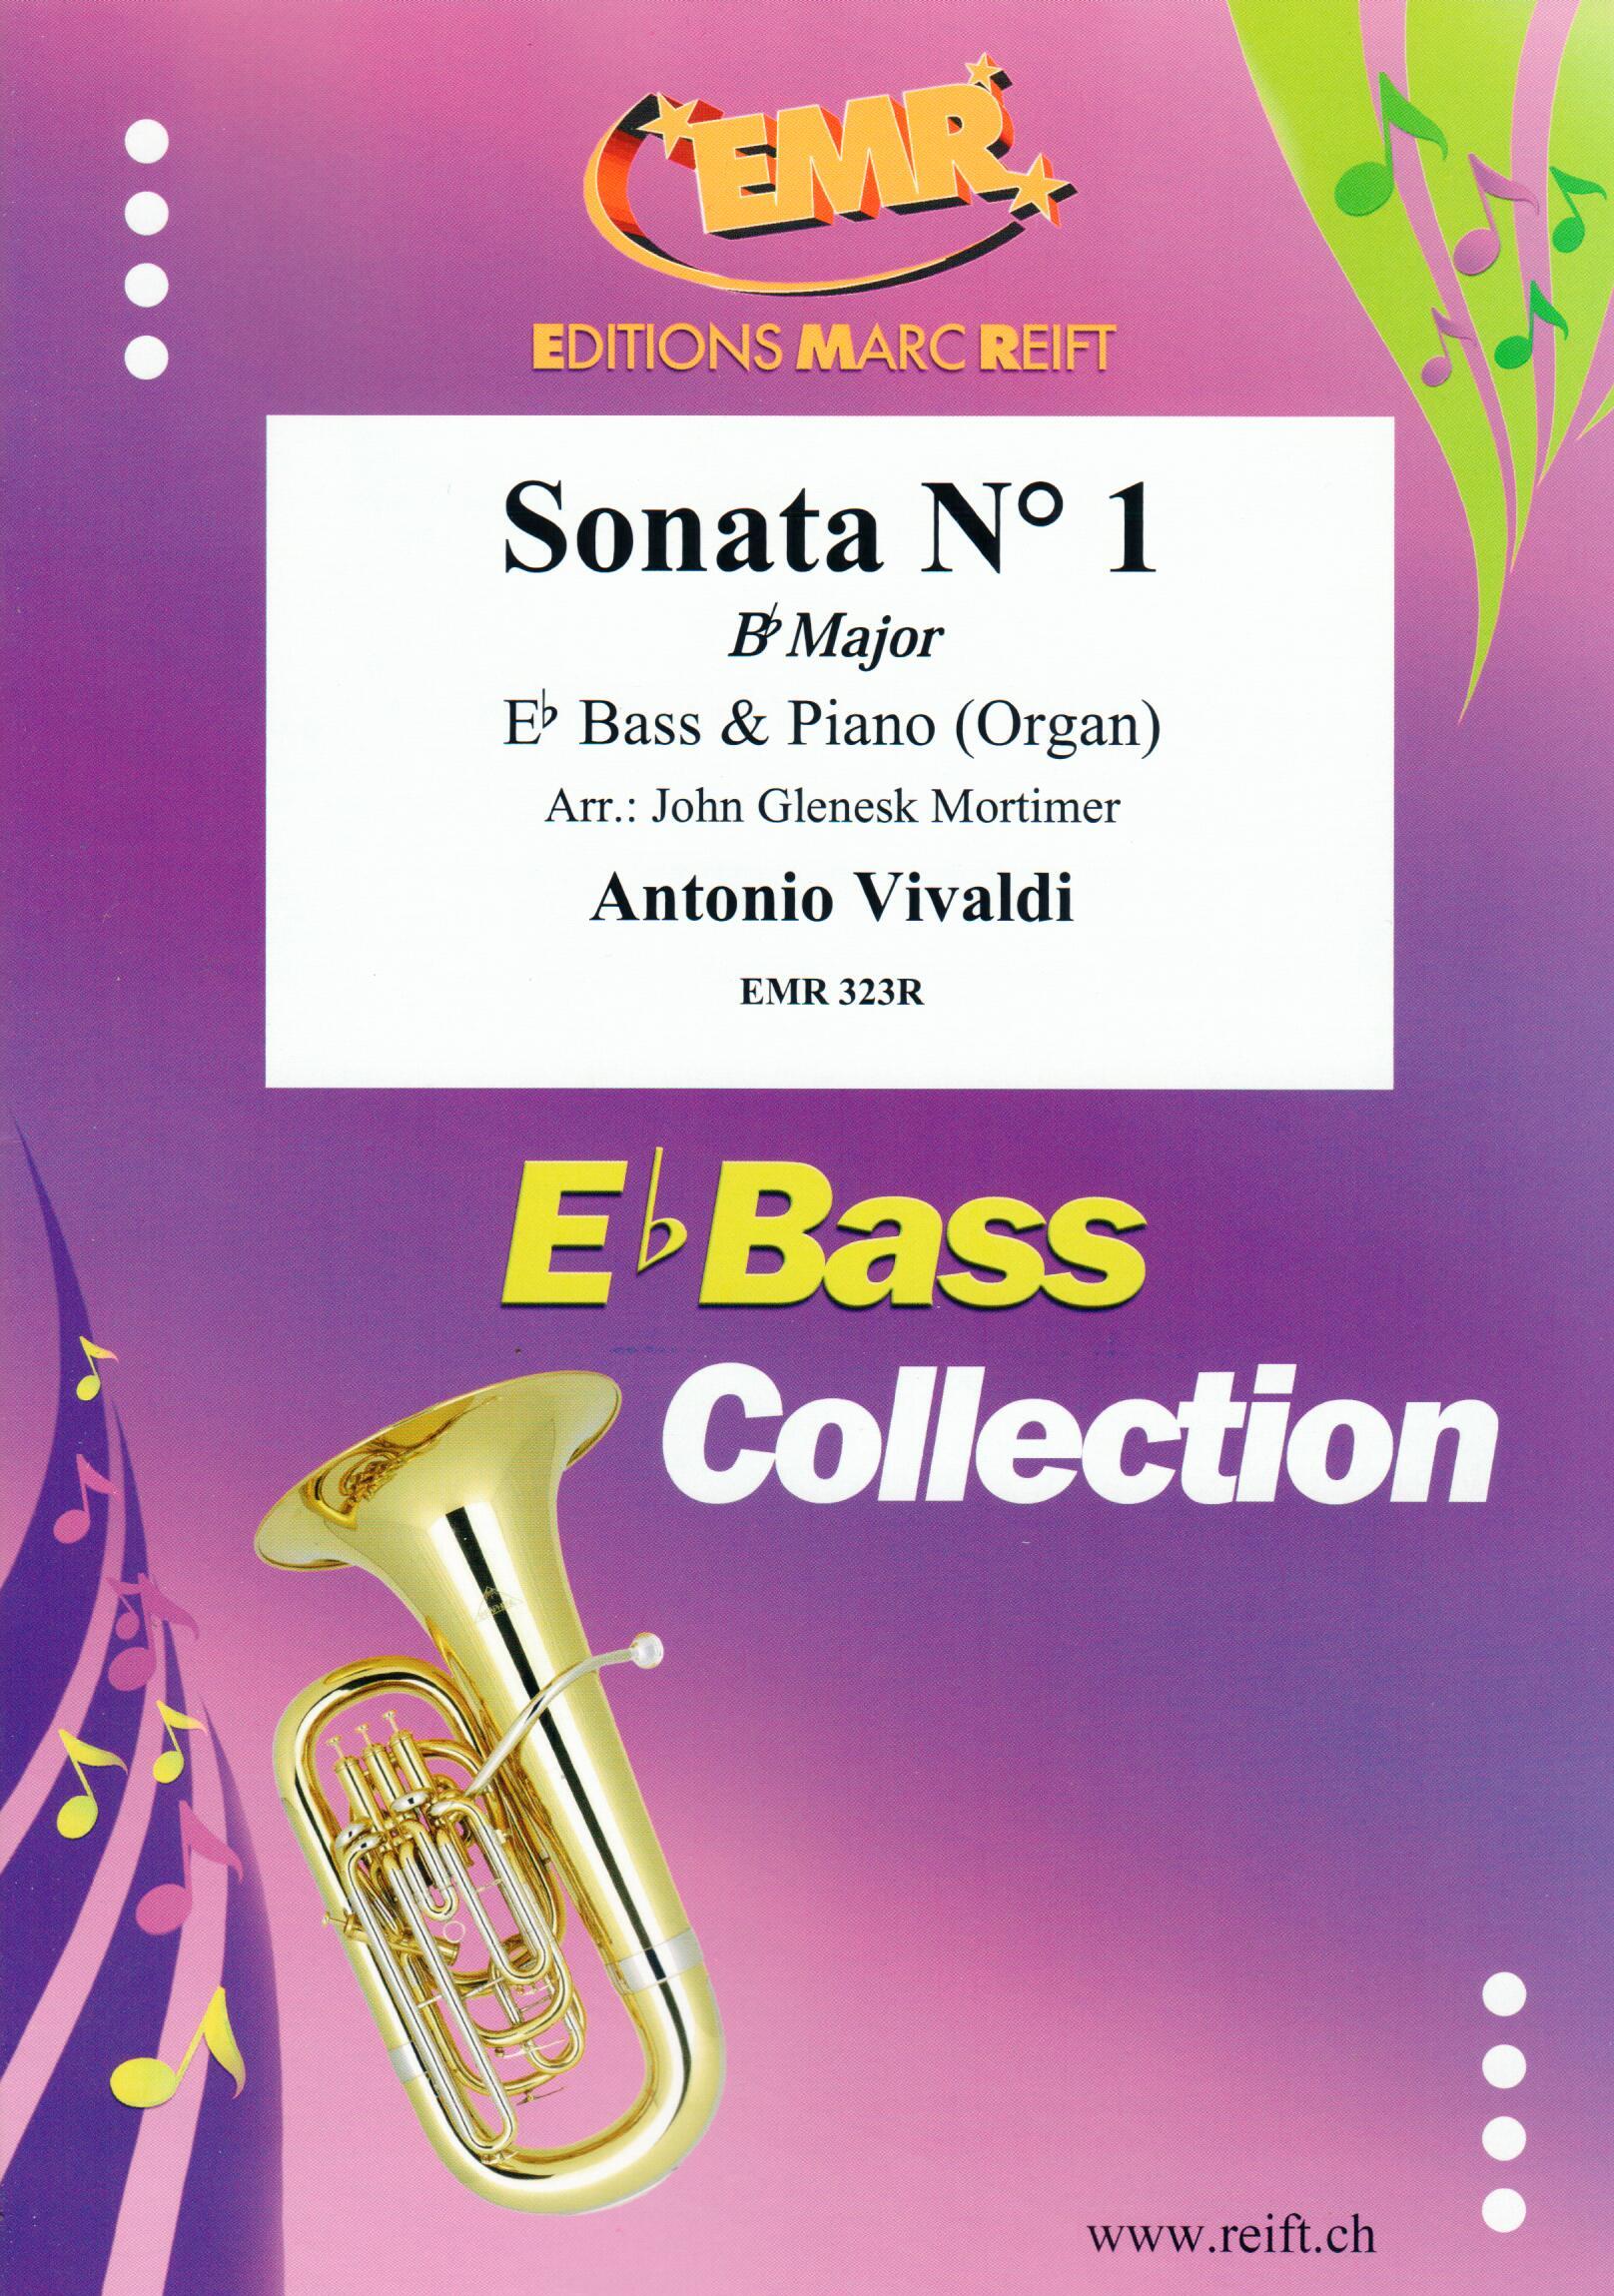 SONATA N° 1 IN BB MAJOR, SOLOS - E♭. Bass